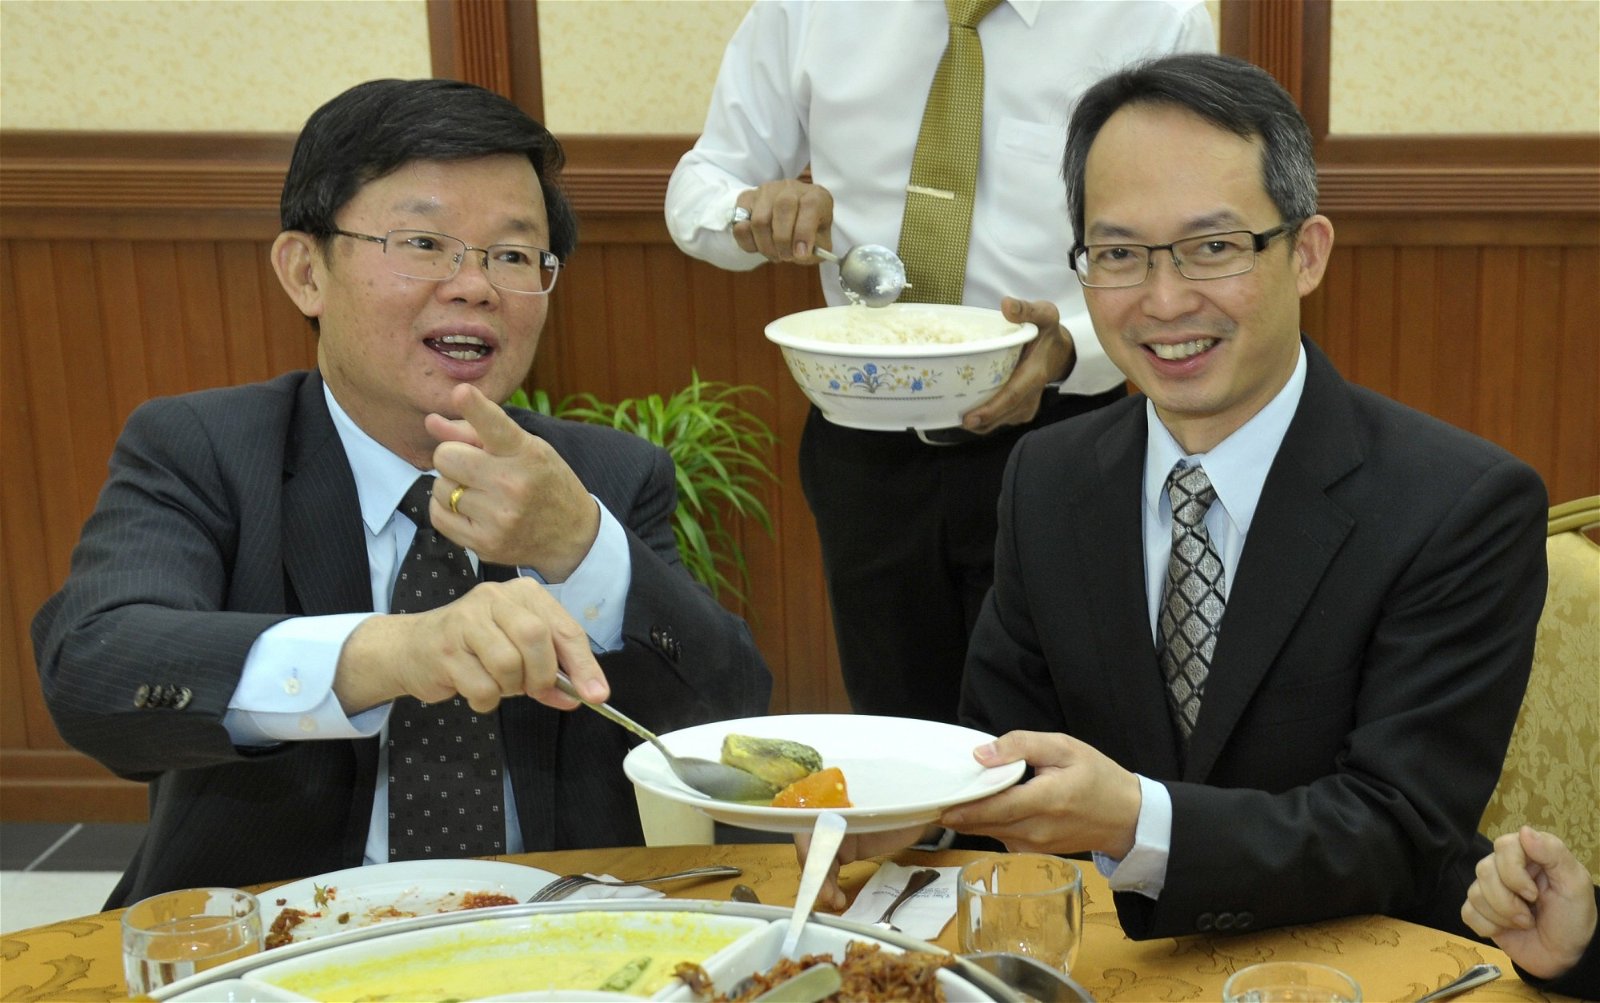 刘子健（右）担任槟州议长以来，州议会的膳食都受到 好评，曹观友与他同桌共餐时，不忘了为对方盛菜肴表 示谢意。（摄影： -蔡开国)